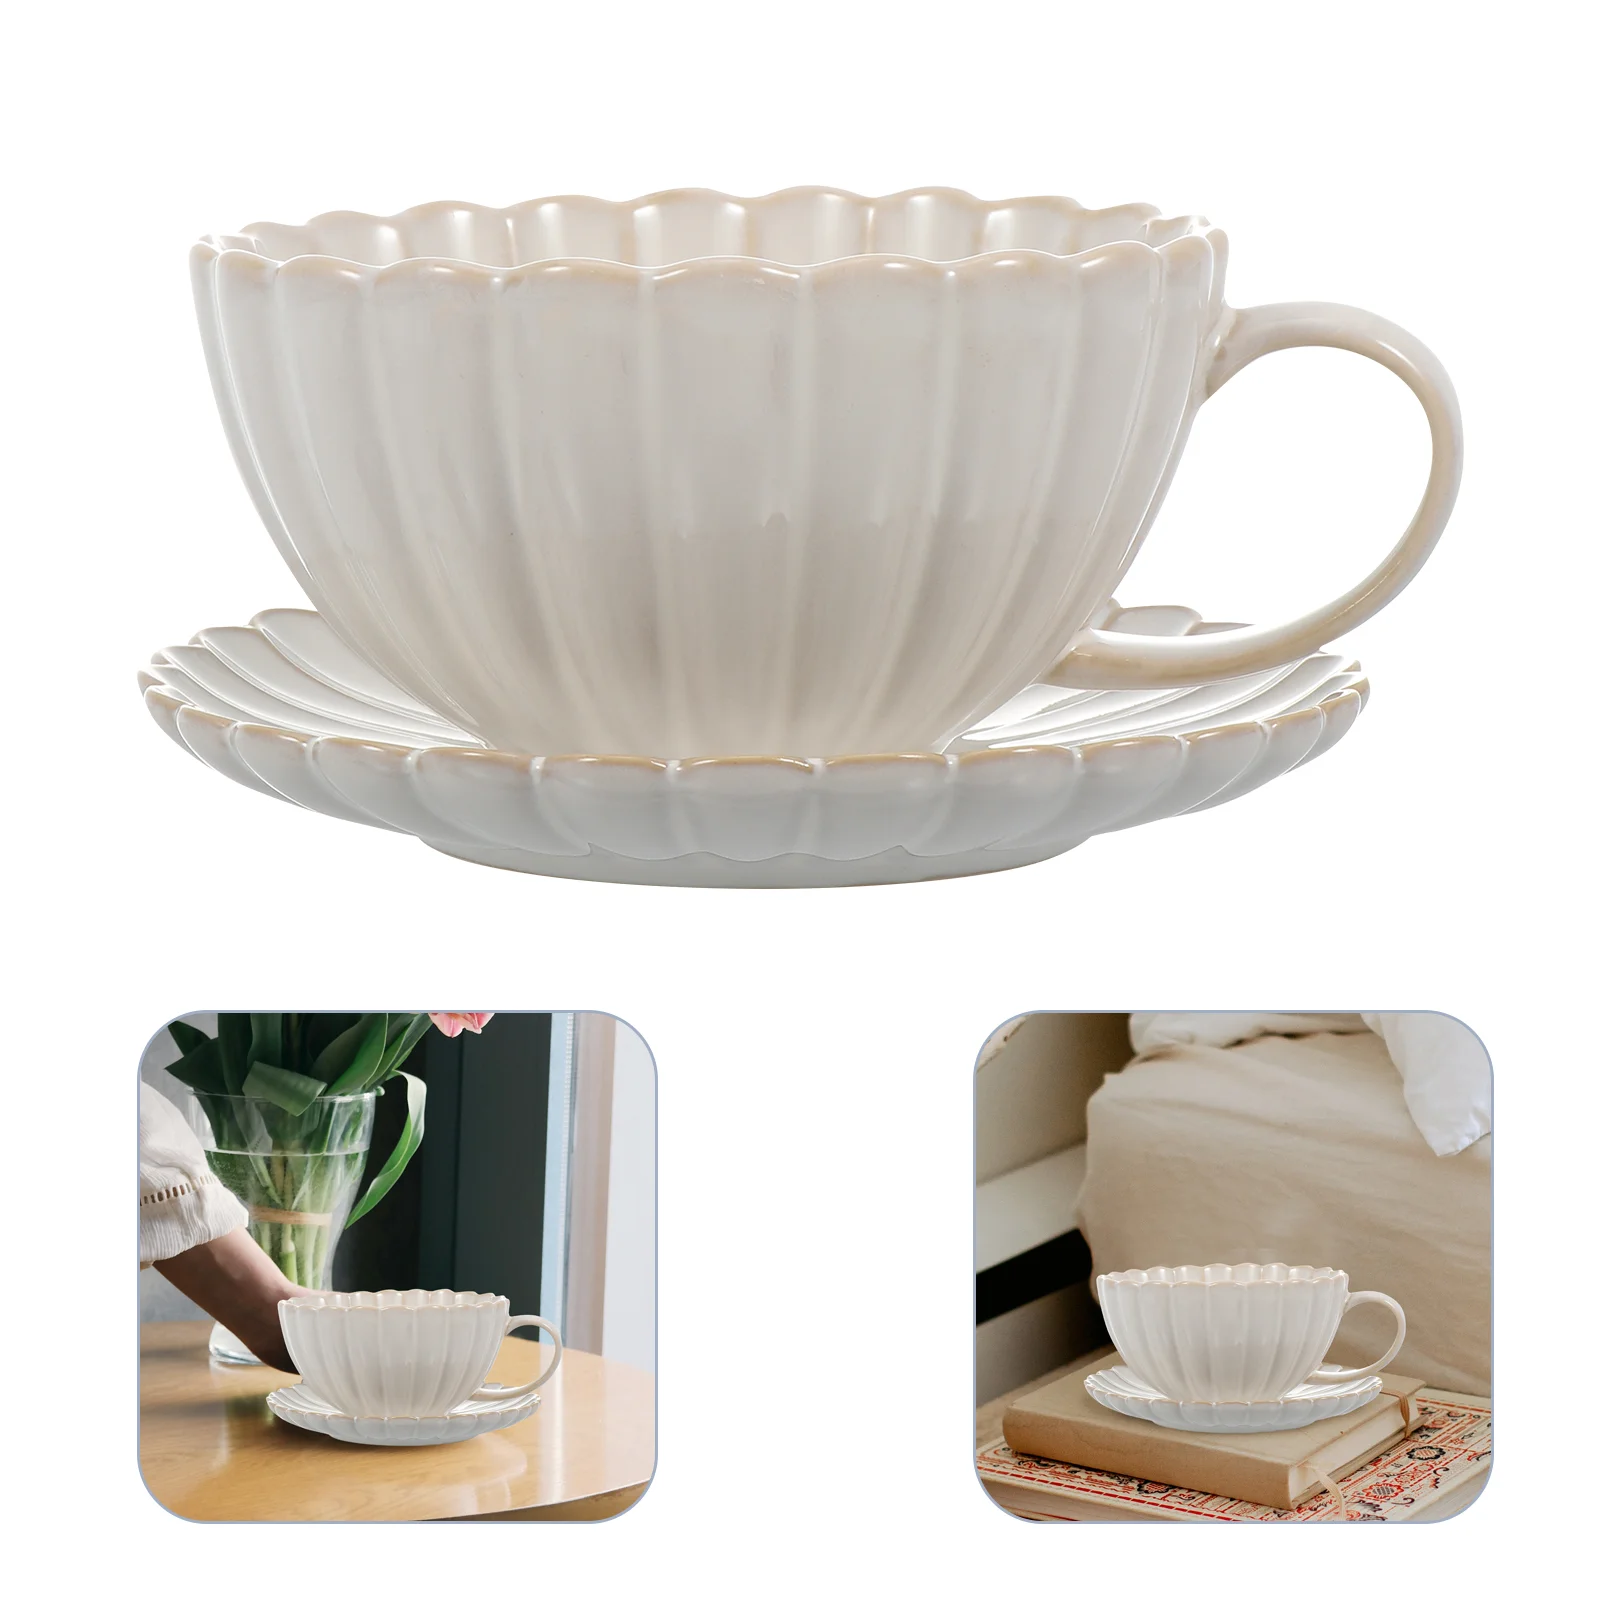 

1 Набор, керамическая кофейная чашка, блюдце, прочная керамическая кружка, декоративная чайная чашка (белая)